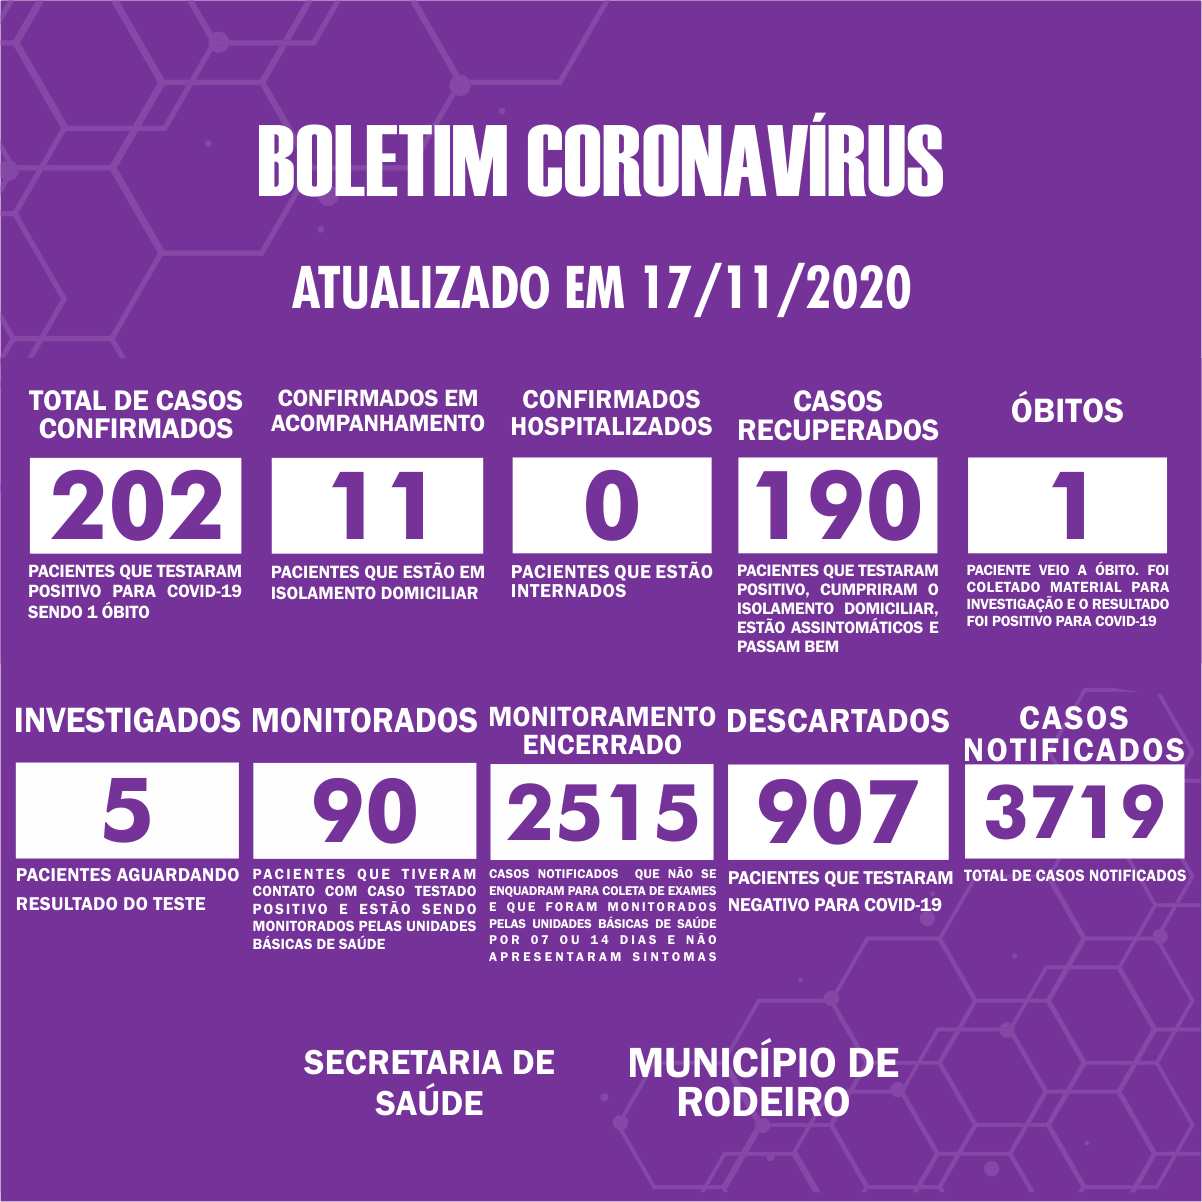 Boletim Epidemiológico do Município de Rodeiro sobre coronavírus, atualizado em 17/11/2020